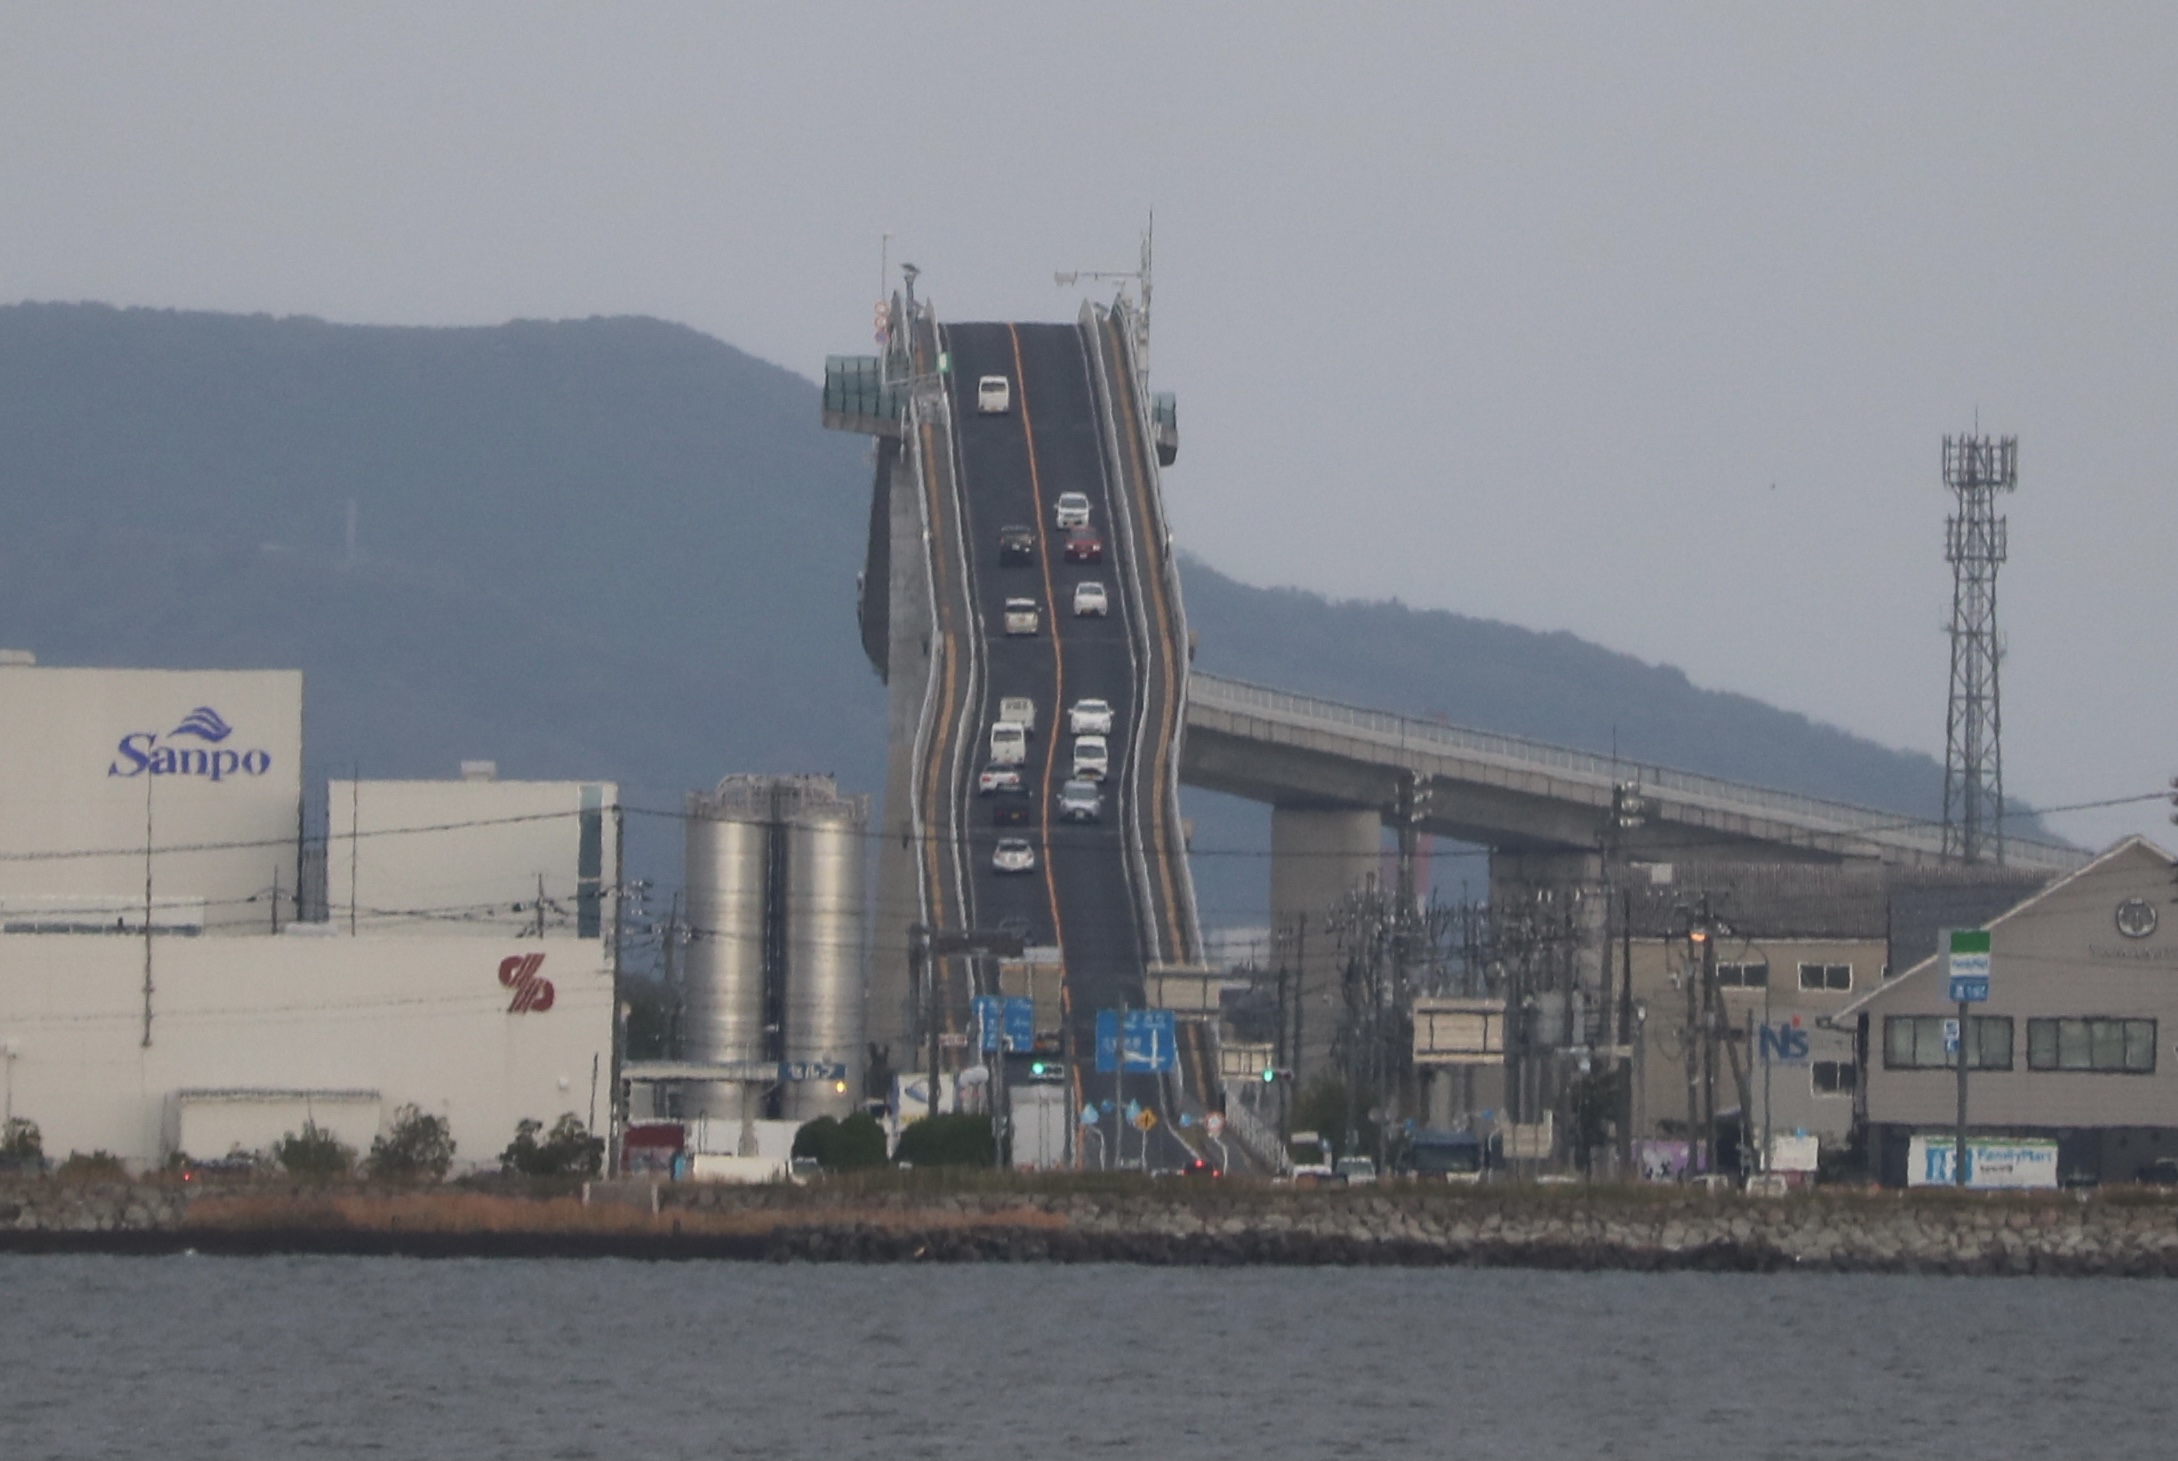 Eindrucksvolle optische Täuschung: Die Eshima-Brücke